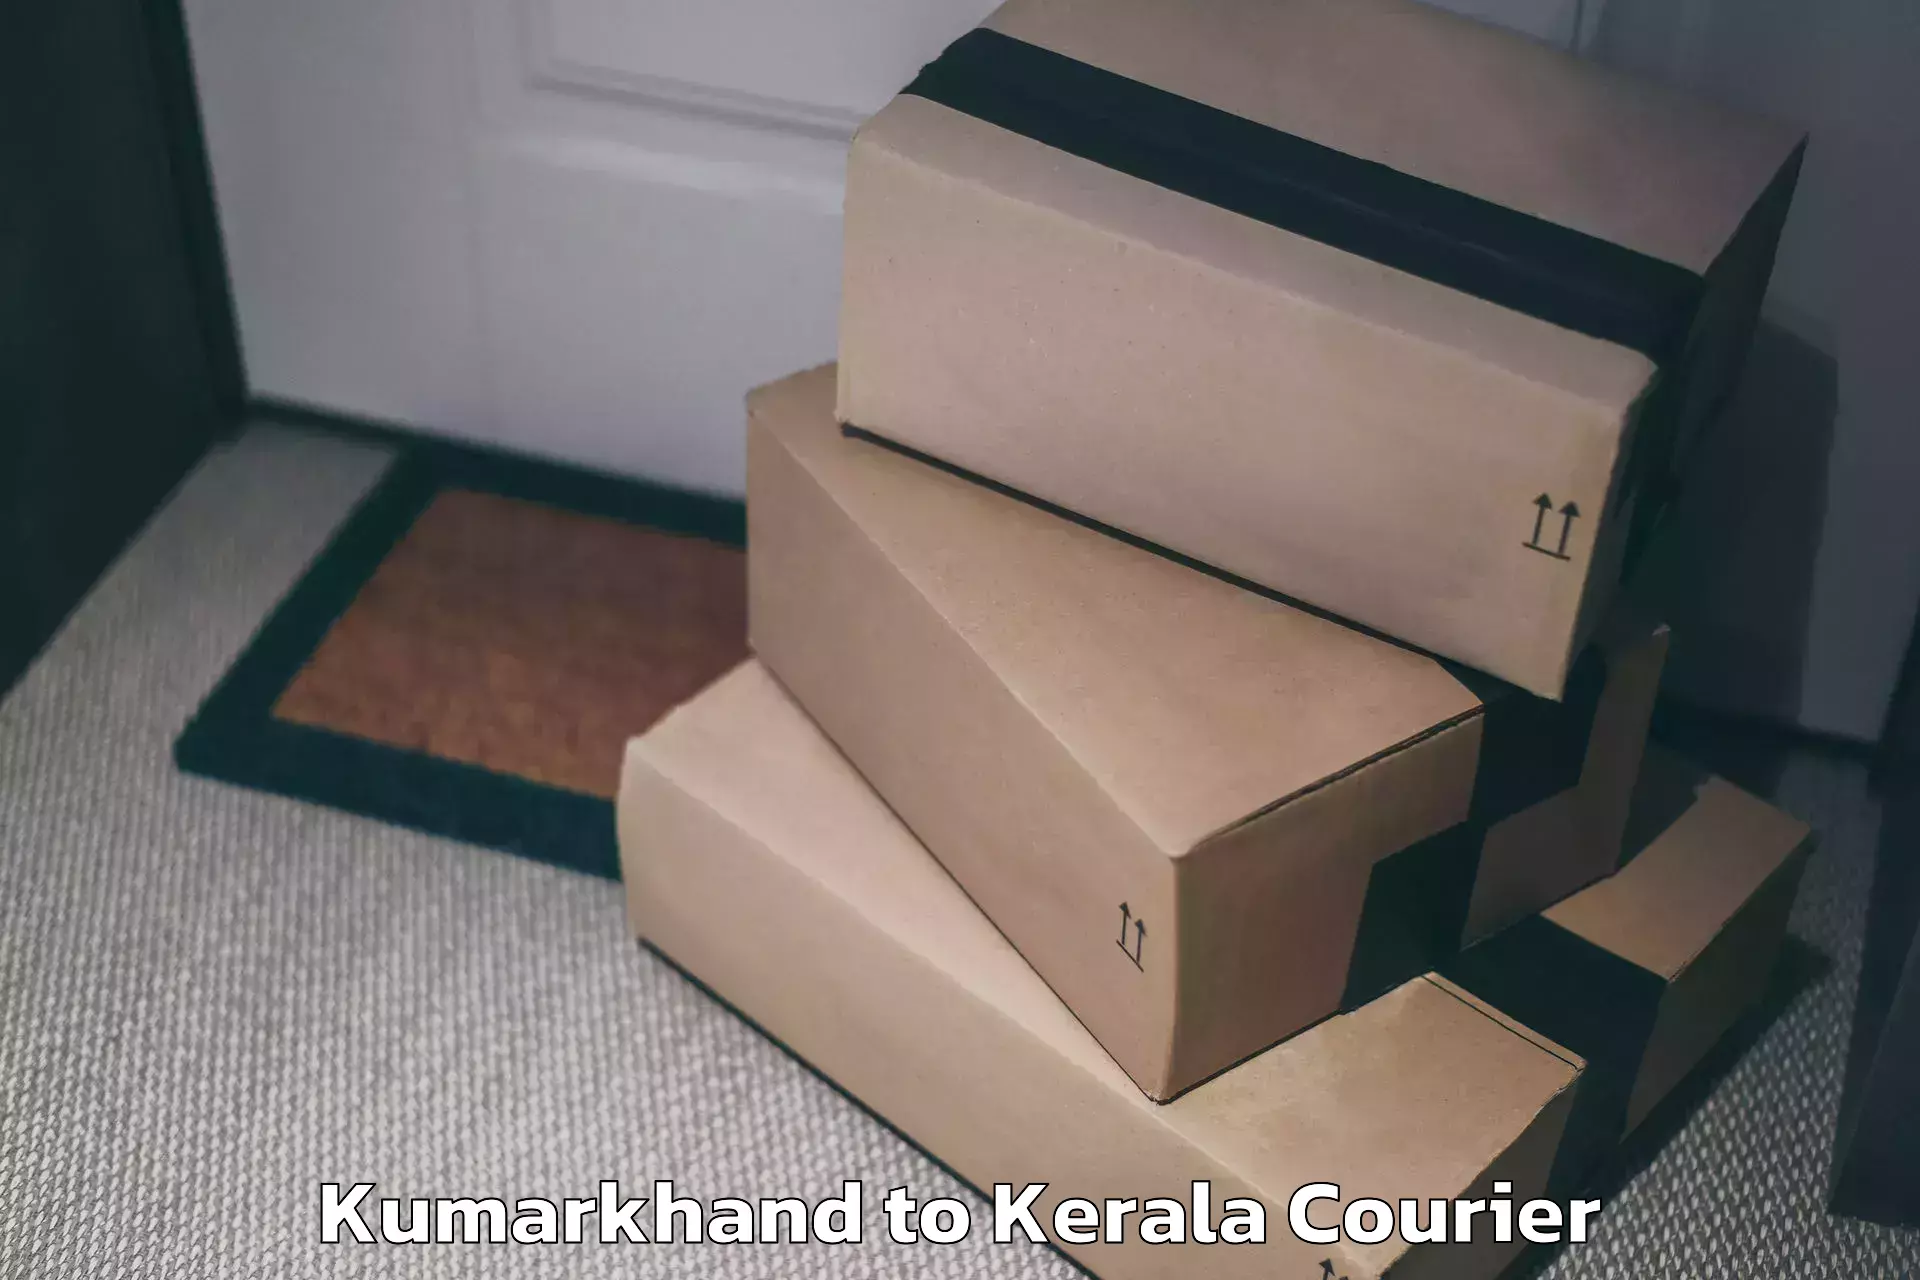 Luggage forwarding service Kumarkhand to Kerala